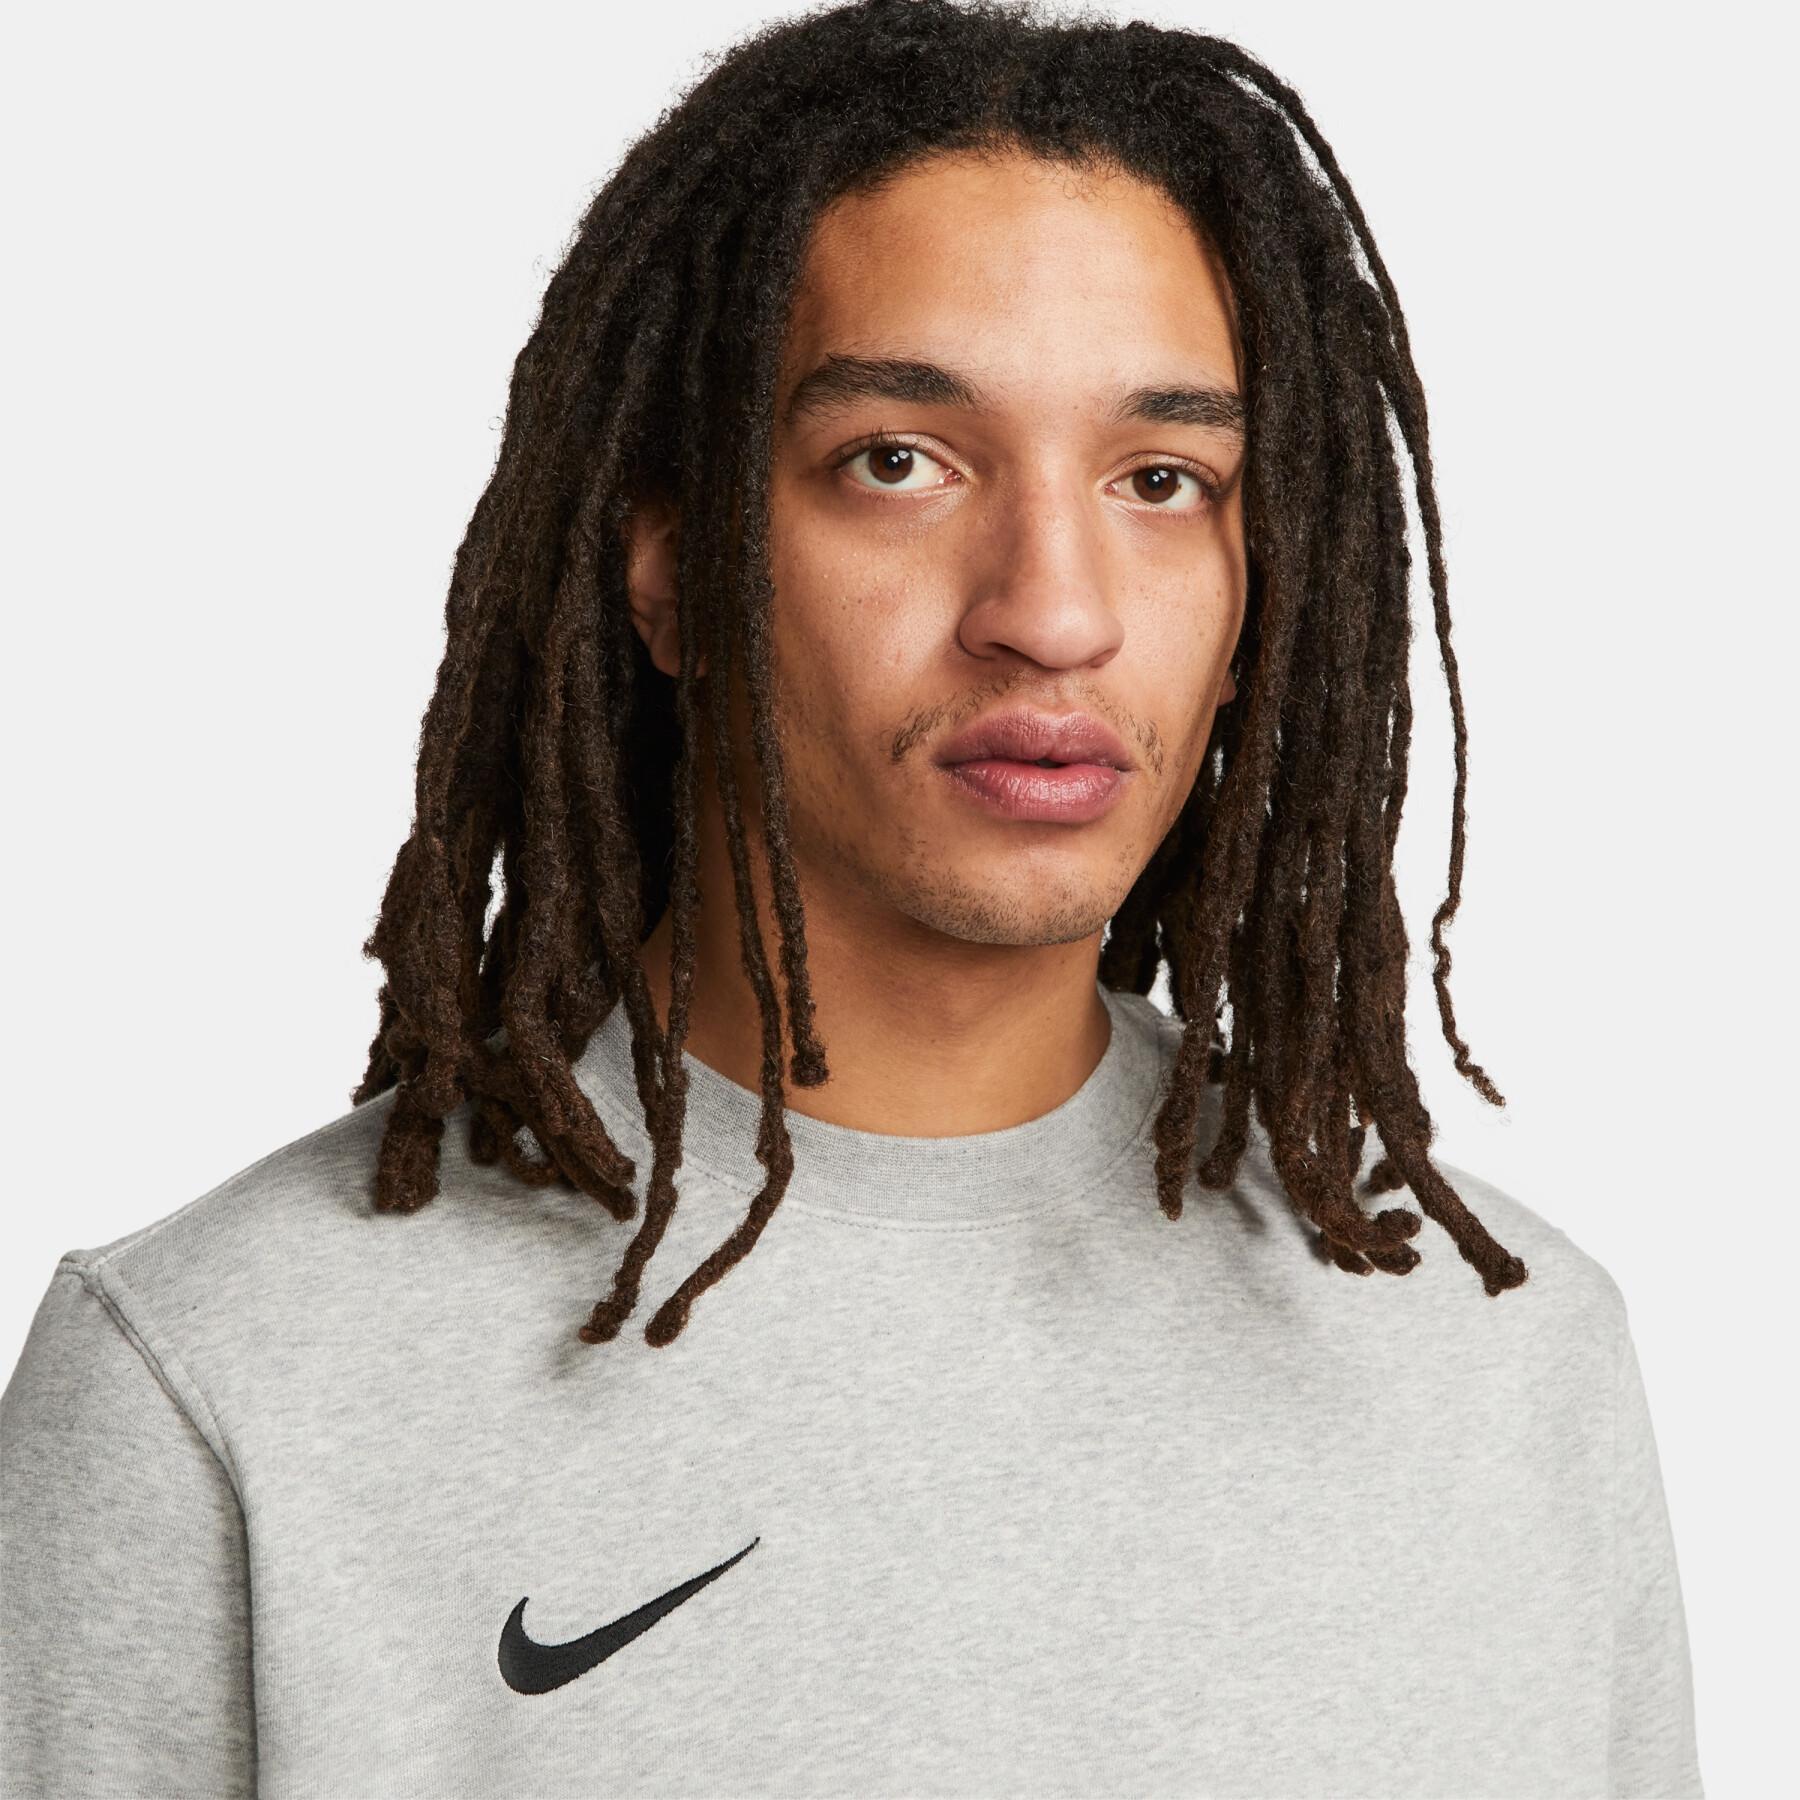 Sweatshirt mit Rundhalsausschnitt Nike Fleece Park20